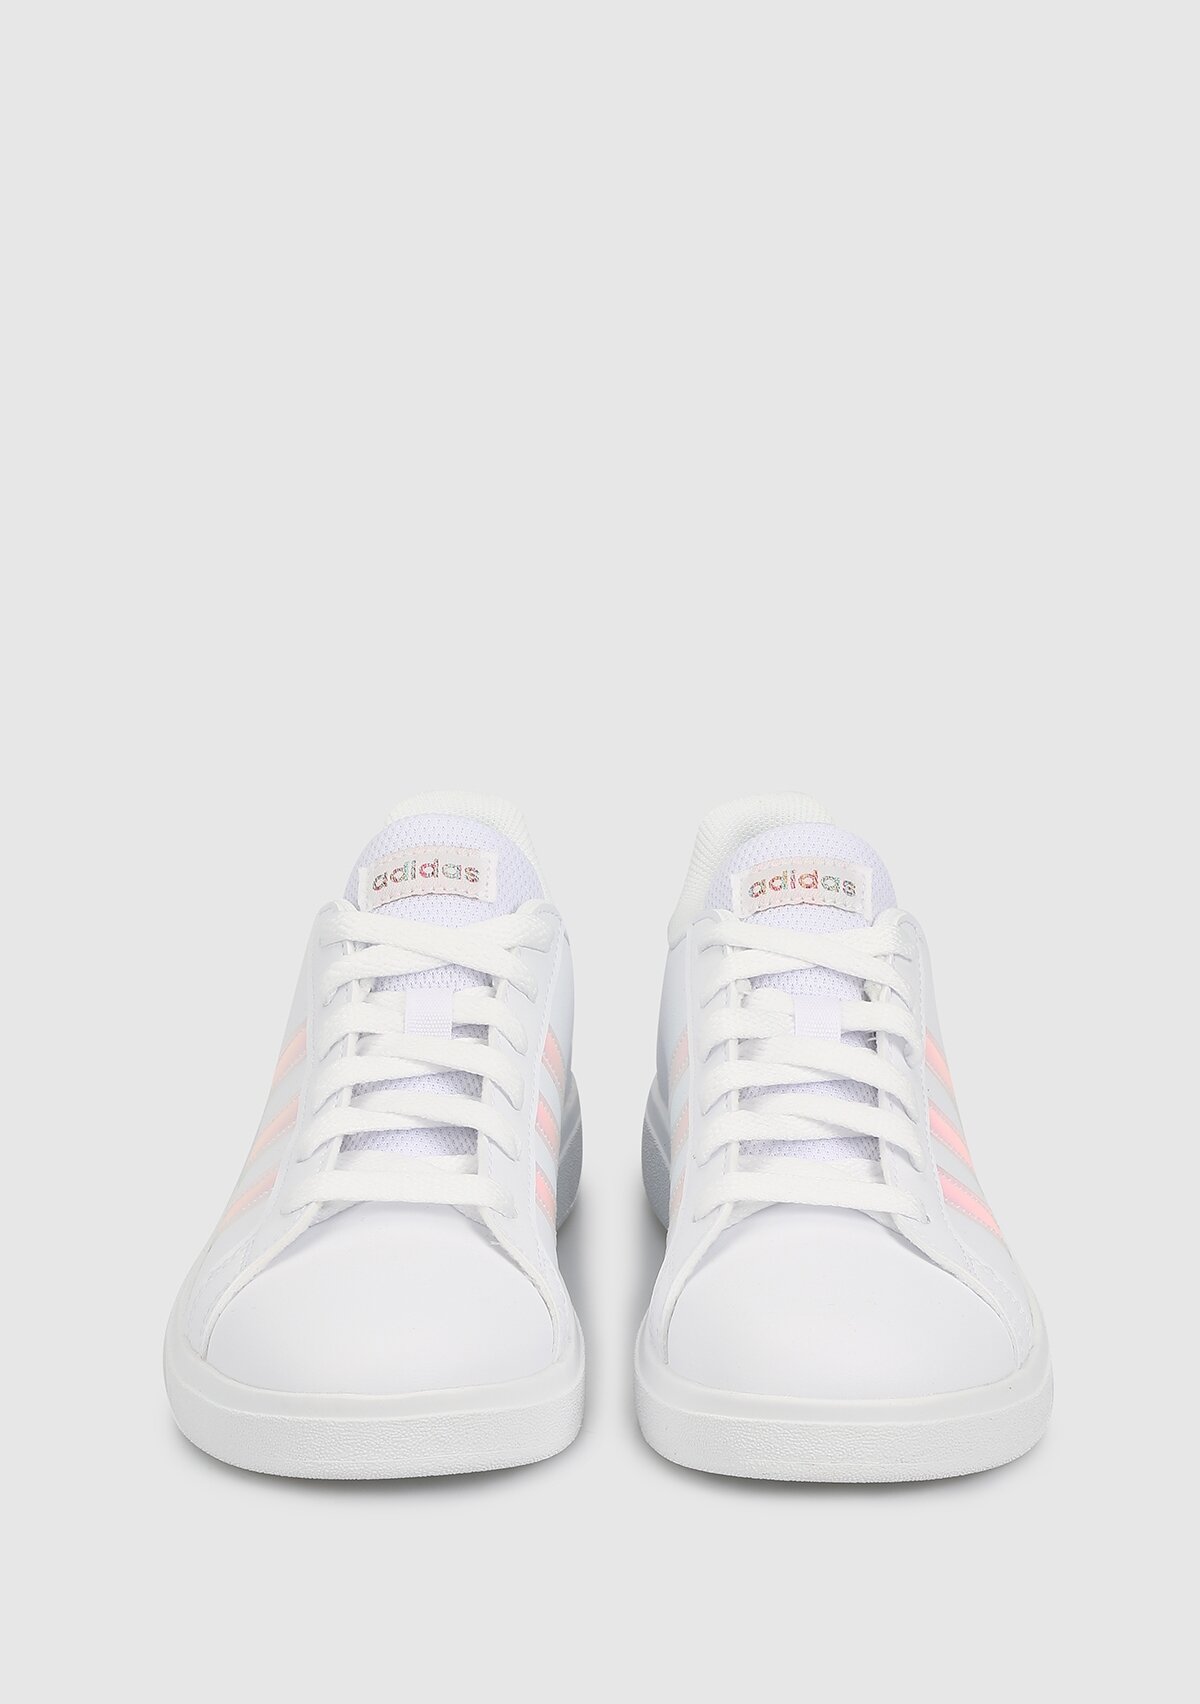 adidas Grand Court 2.0 K Beyaz Unısex Tenis Ayakkabısı Gy2326